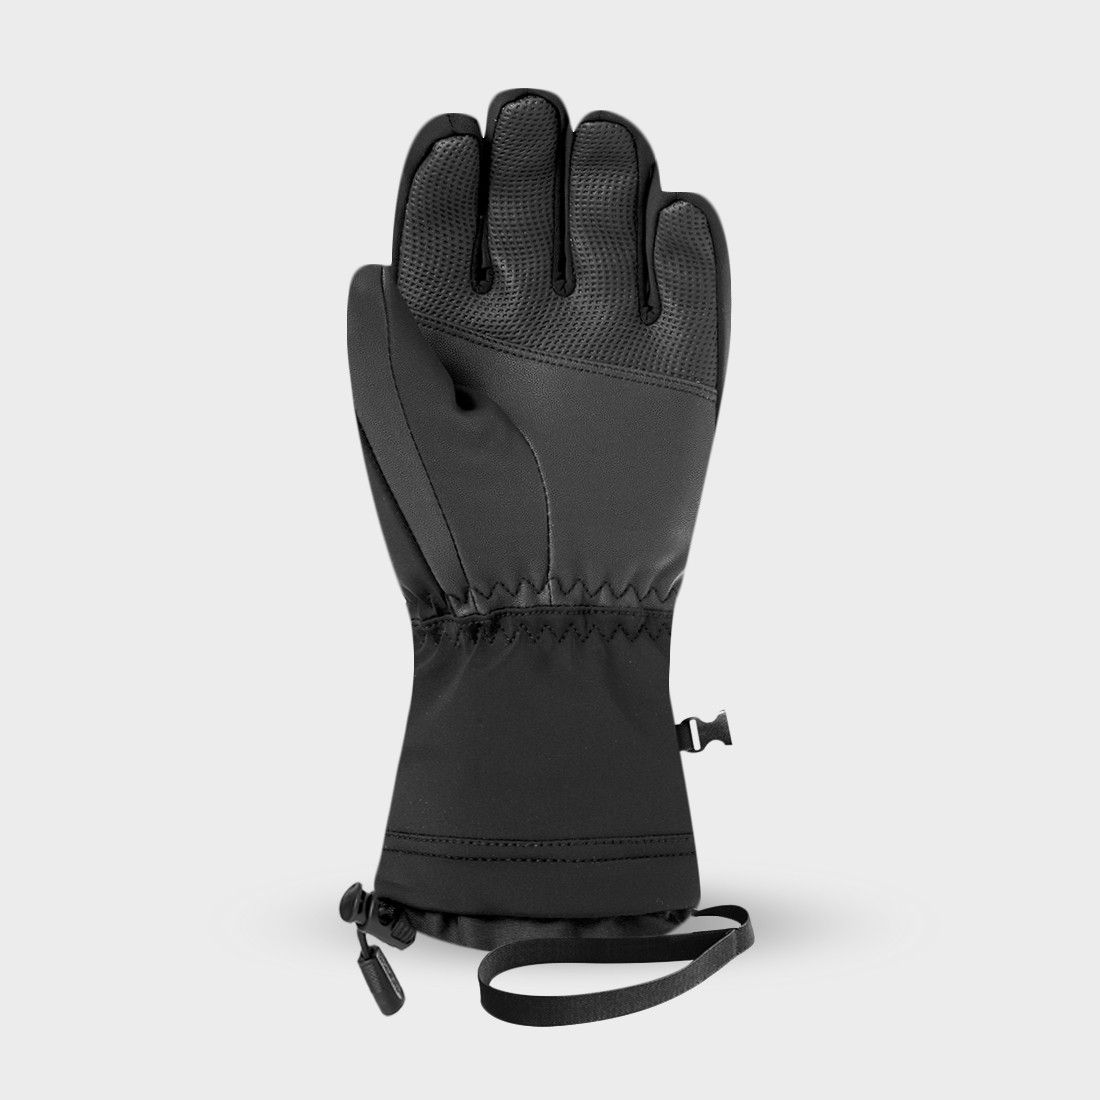 GRAVEN 4 - Ski Gloves